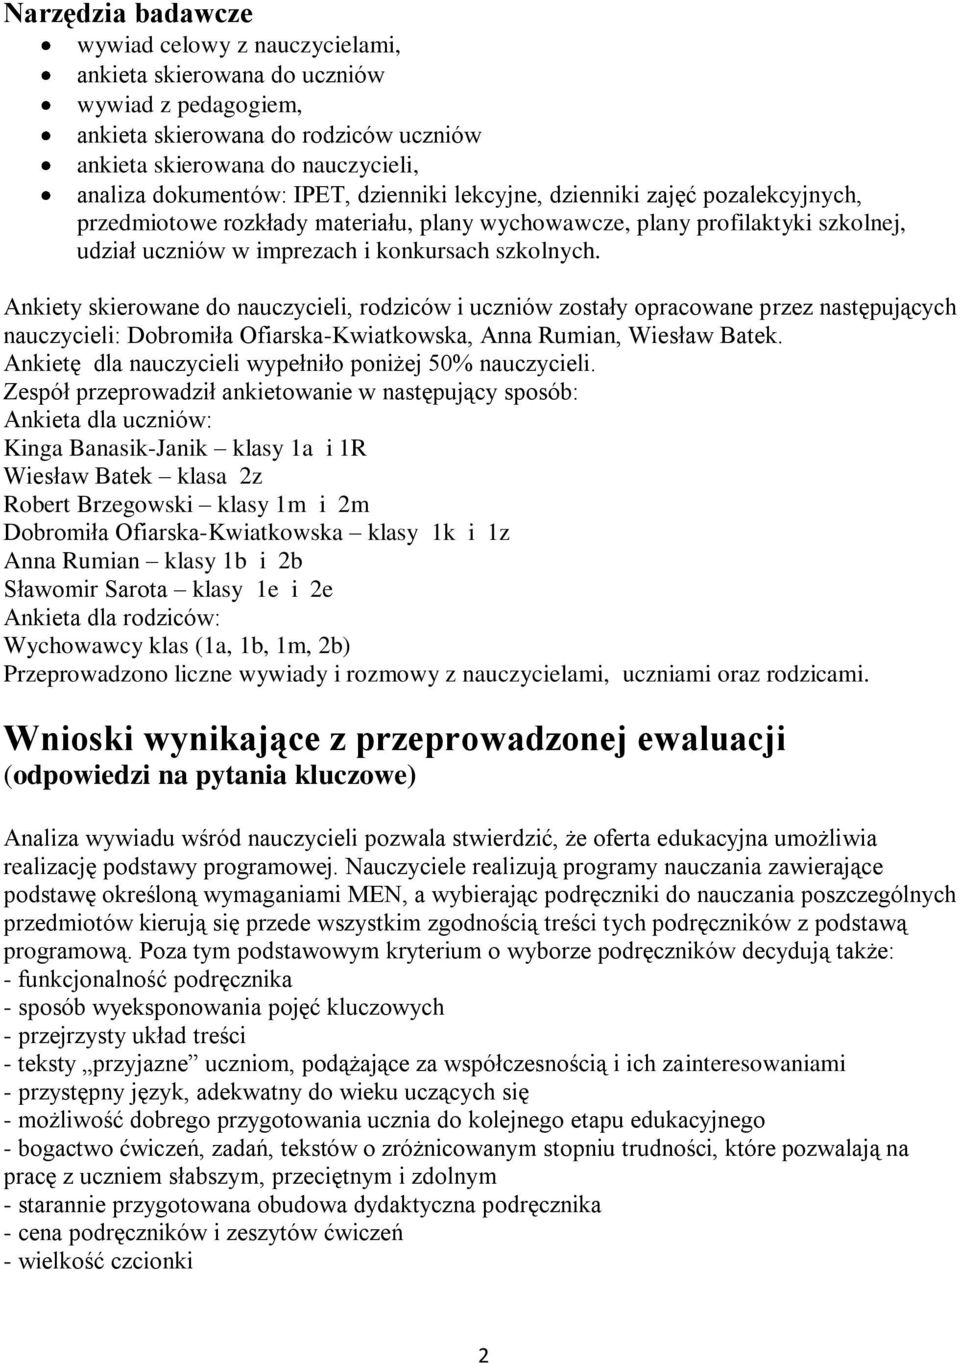 Ankiety skierowane do nauczycieli, rodziców i uczniów zostały opracowane przez następujących nauczycieli: Dobromiła Ofiarska-Kwiatkowska, Anna Rumian, Wiesław Batek.